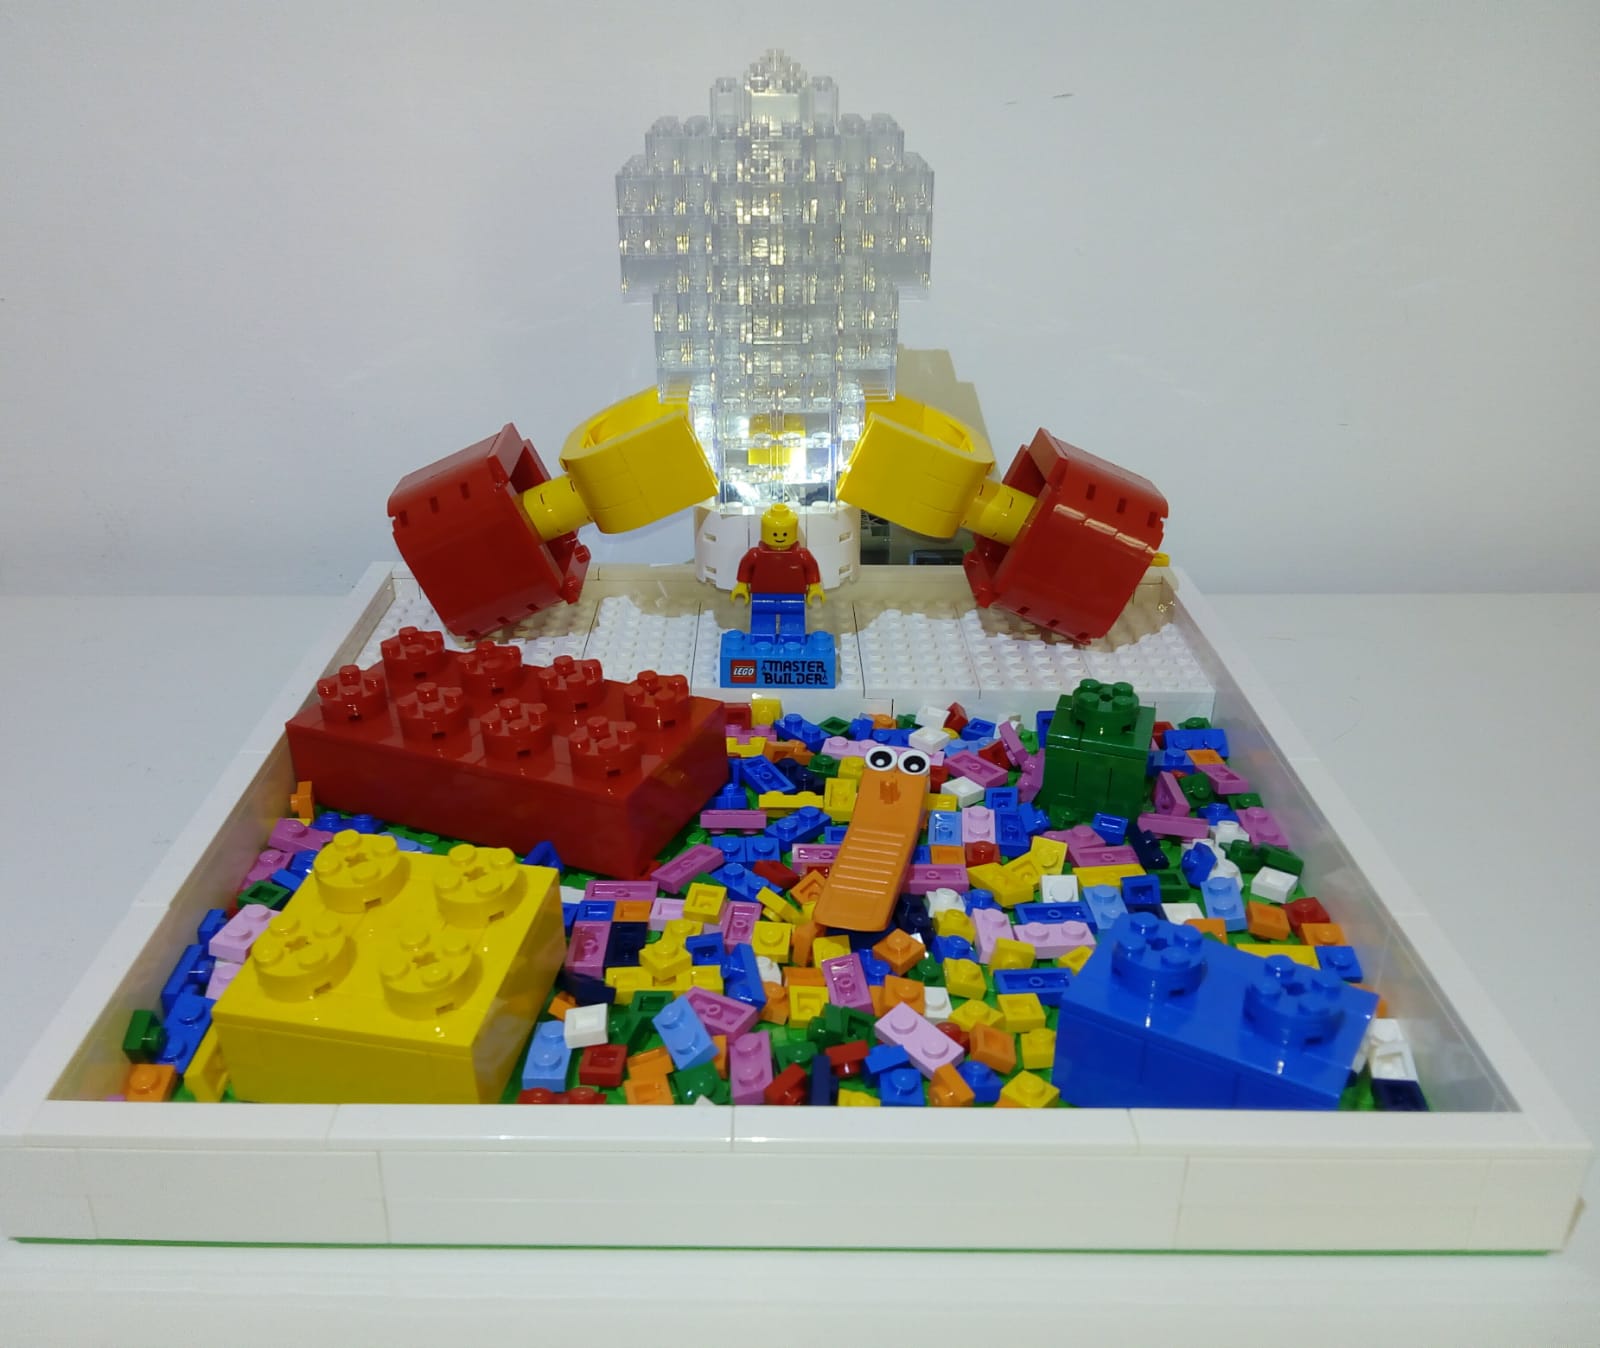 Lego Master Builder, ottimo risultato dei concorrenti baresi - Pop TV1600 x 1348